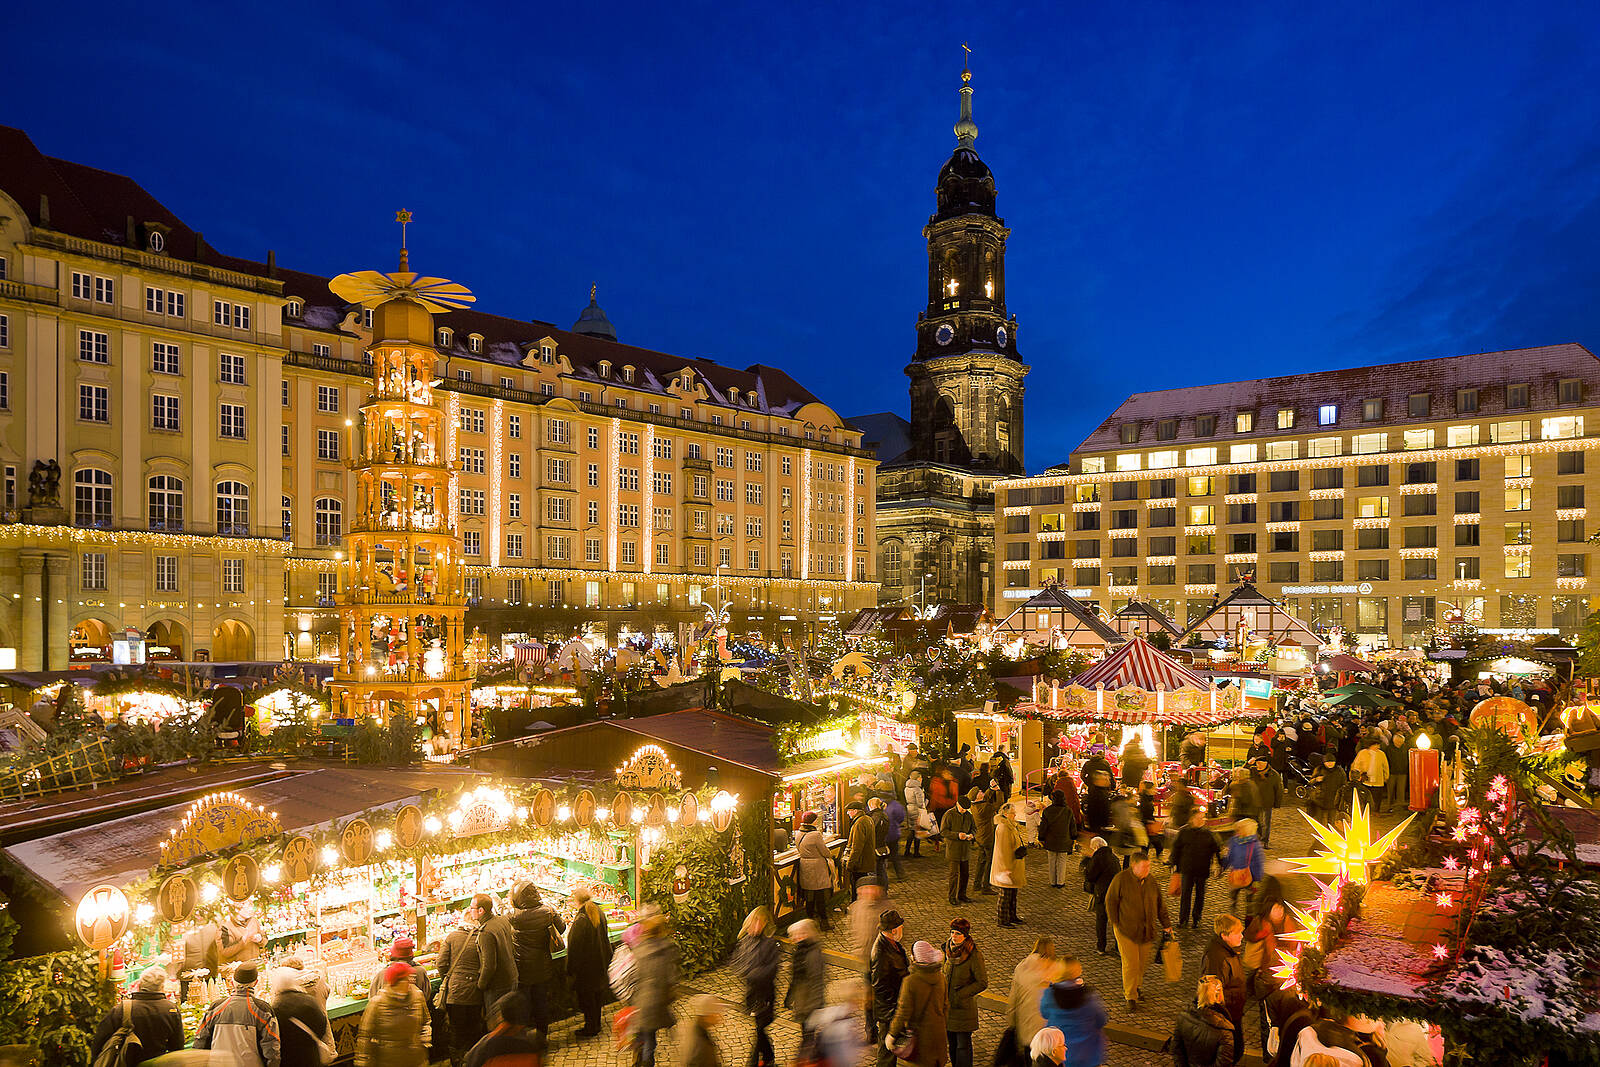 Genießen Sie den wohligen Trubel und Zauber der Weihnachtsstadt Dresden bei einem moderieren Rundgang durch die weihnachtlich geschmückte Altstadt.